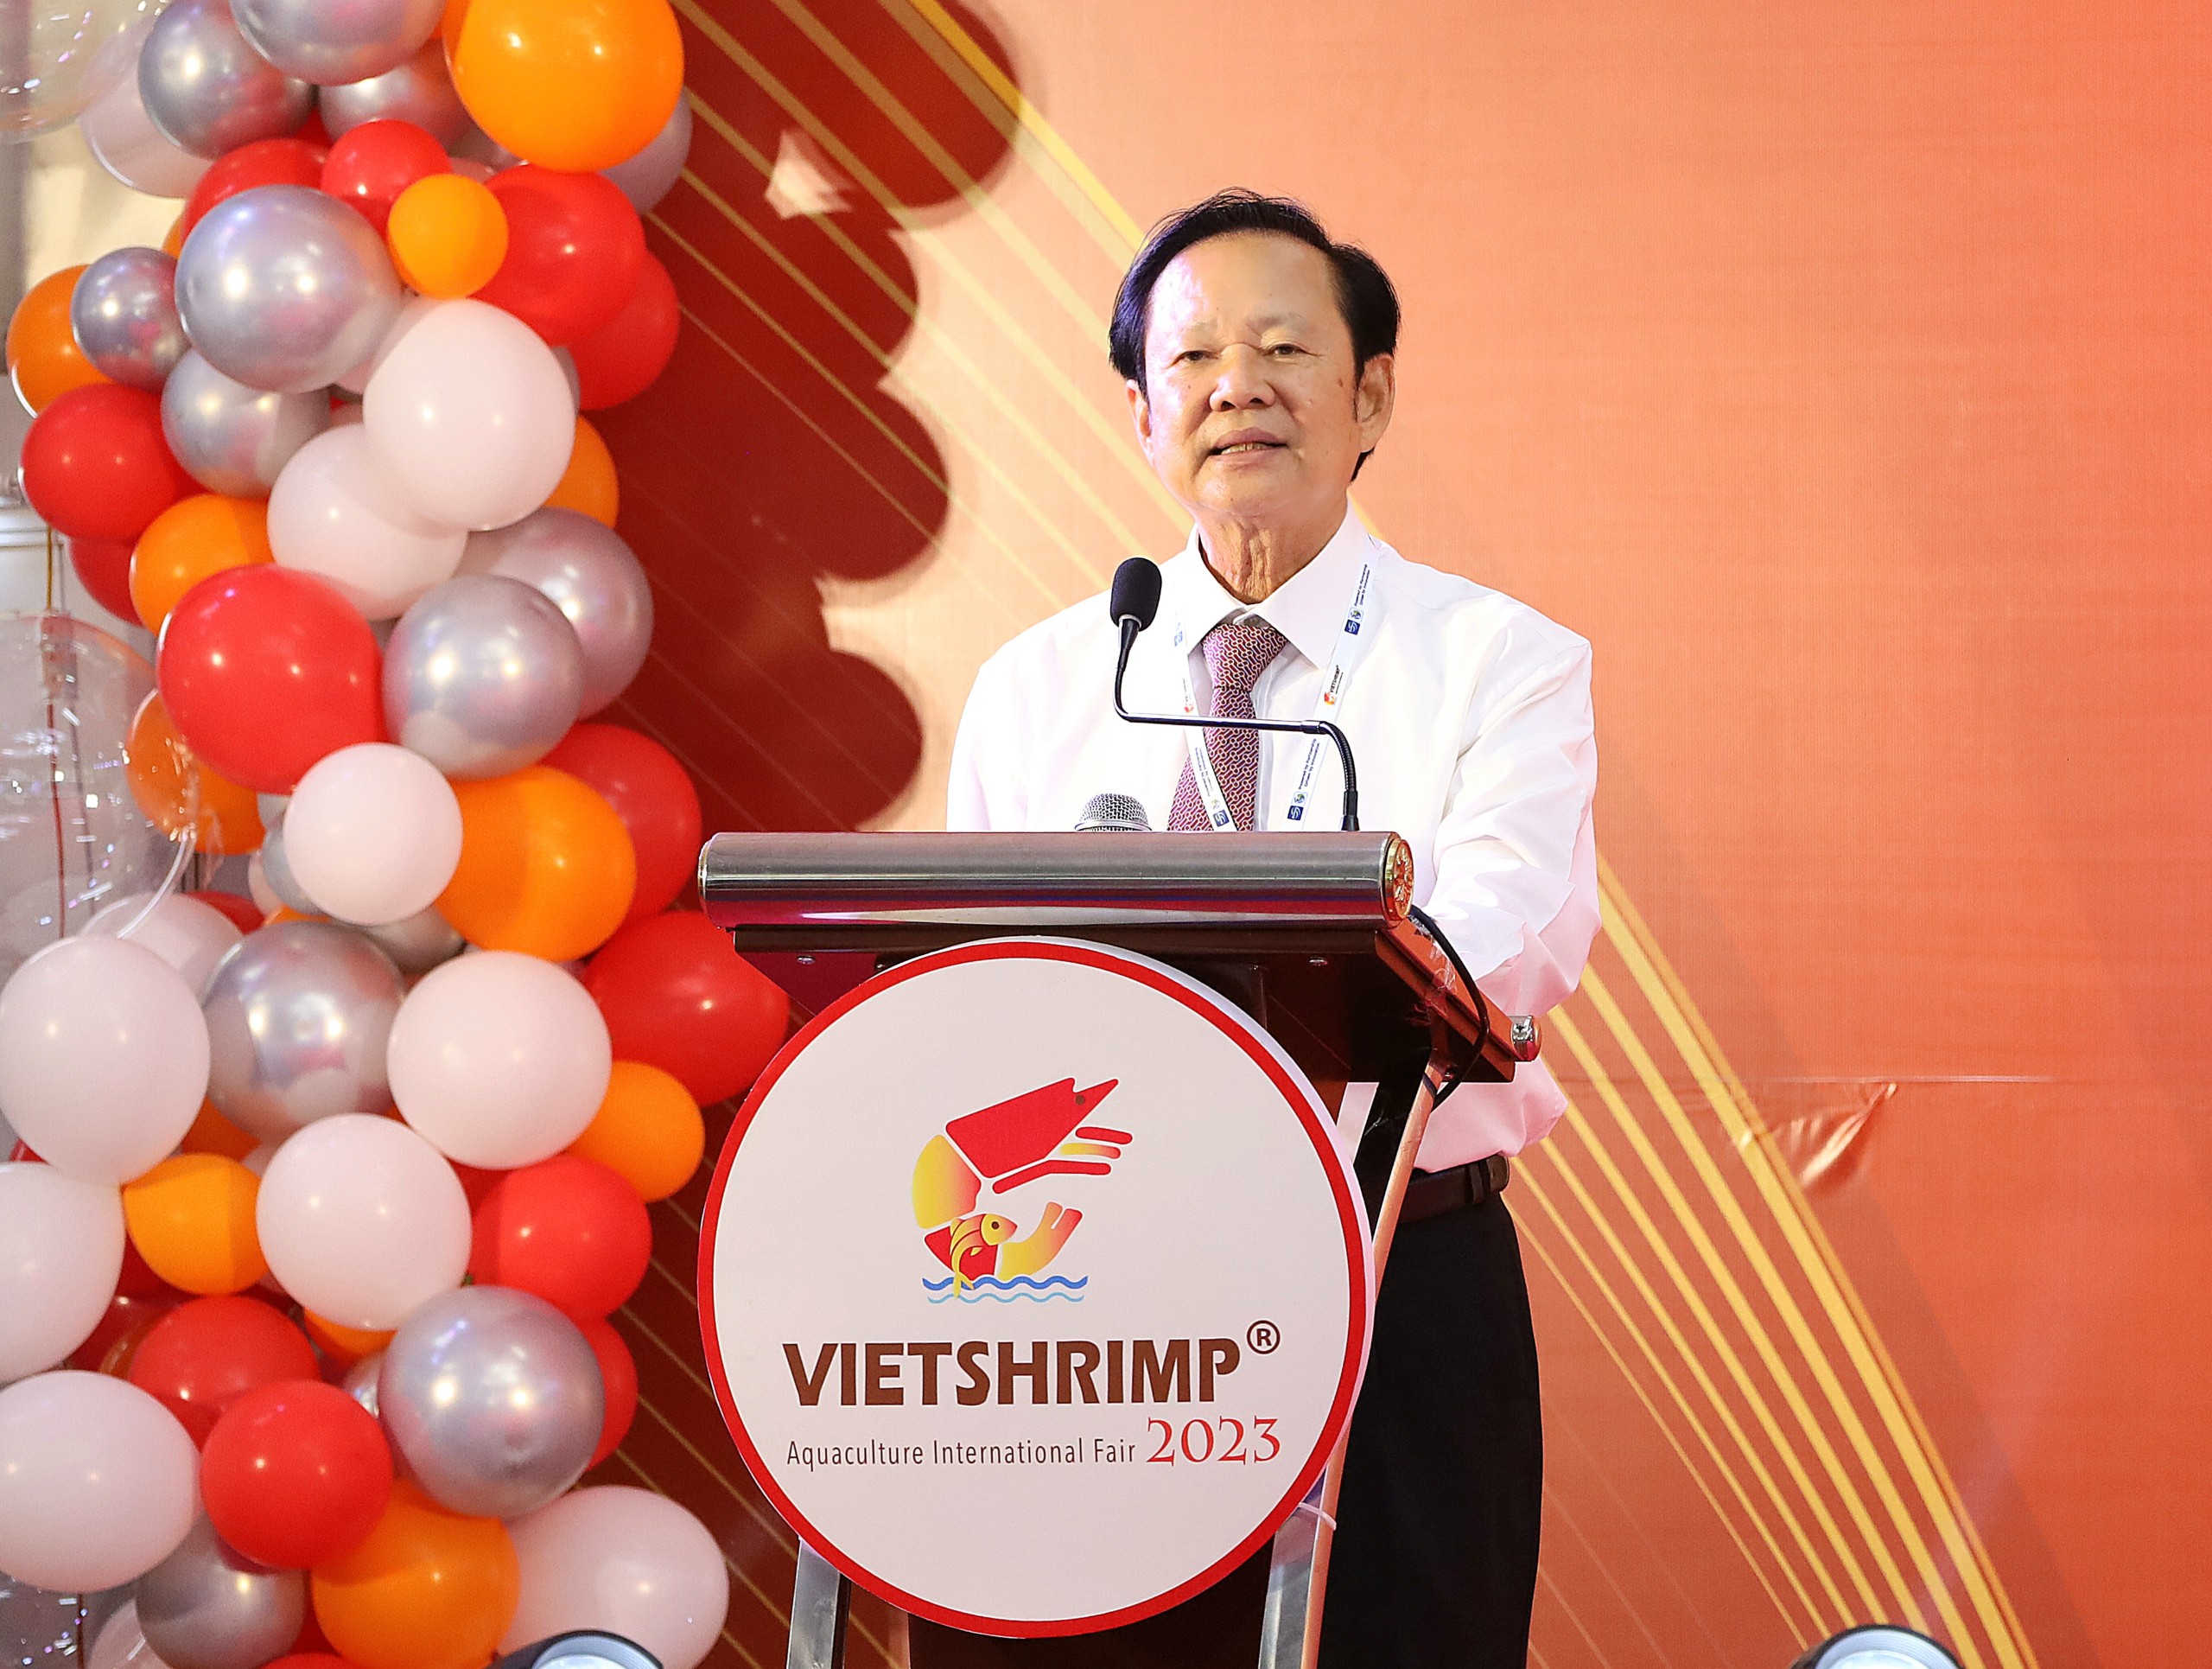 Ông Nguyễn Việt Thắng - Chủ tịch Hội Nghề cá Việt Nam, Trưởng Ban Tổ chức VietShrimp 2023 phát biểu khai mạc.